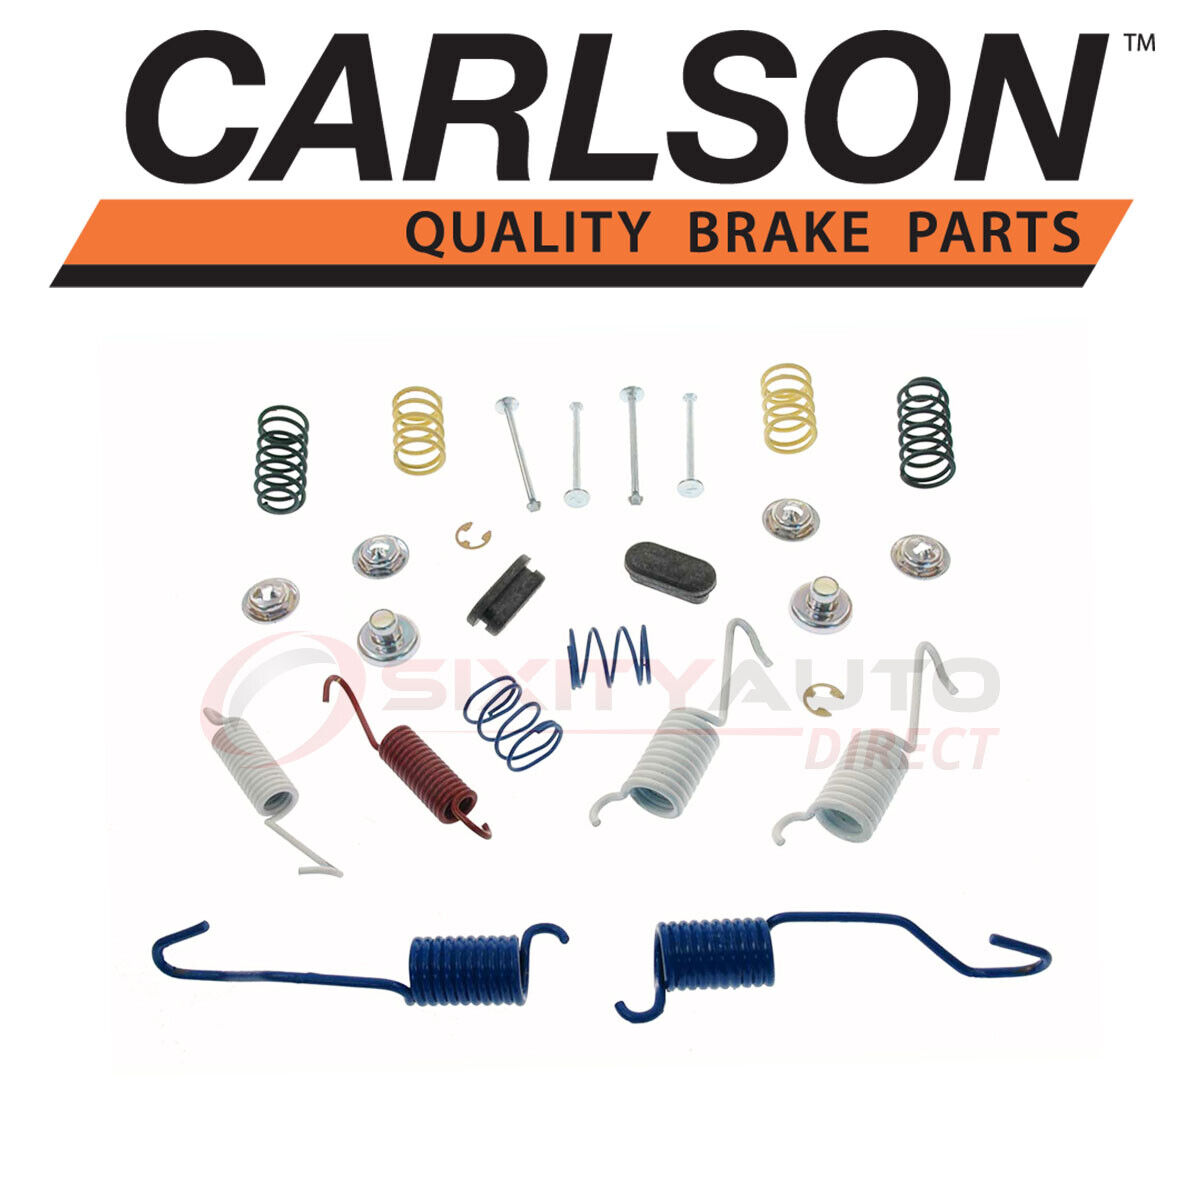 Carlson Rear Drum Brake Hardware Kit for 1978-1988 Oldsmobile Cutlass ky